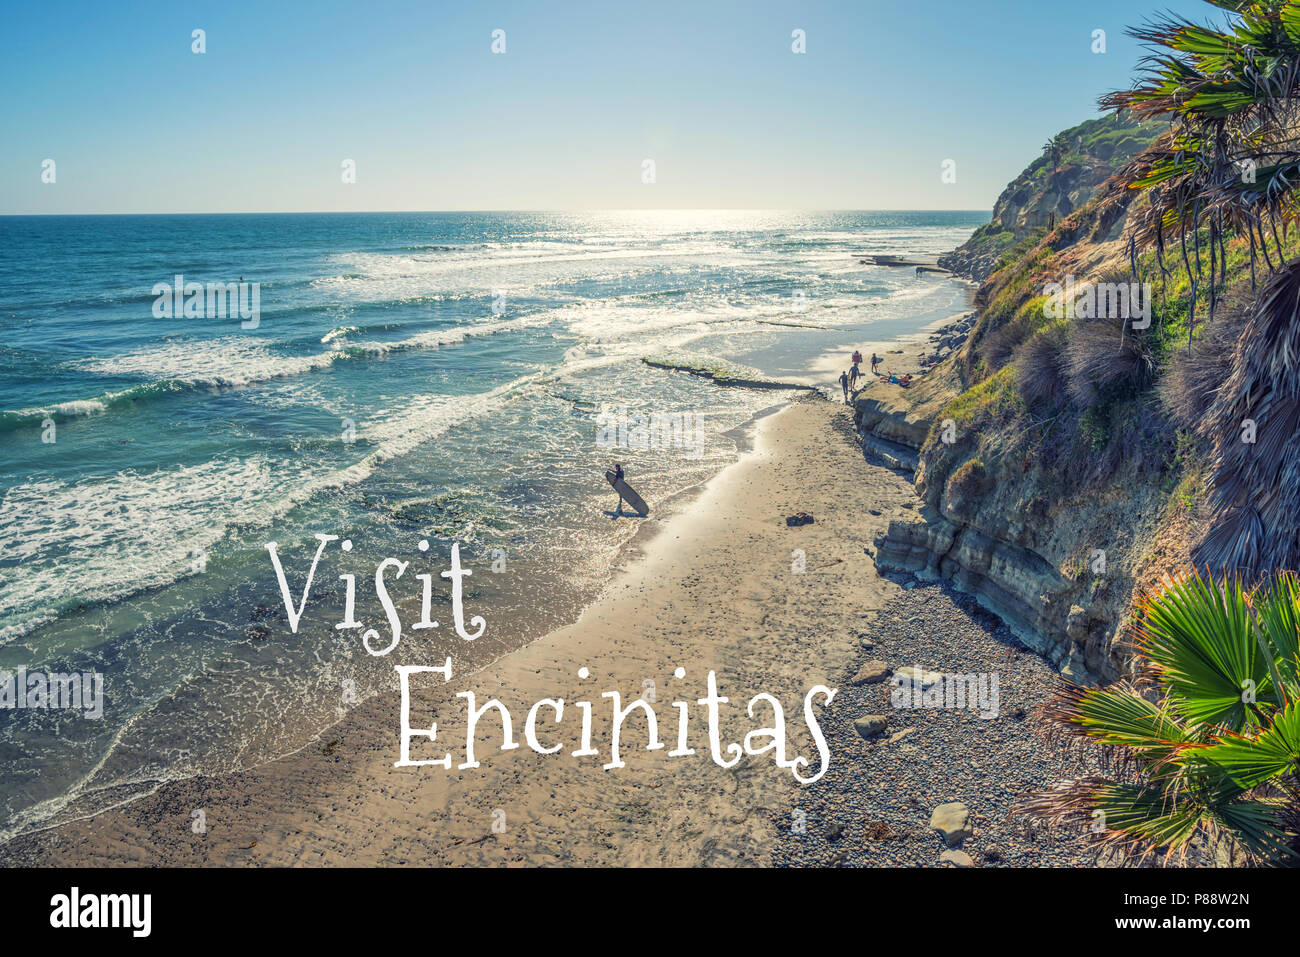 Travel concept. Photograph of Swami's Beach. Encinitas, California, USA. Stock Photo